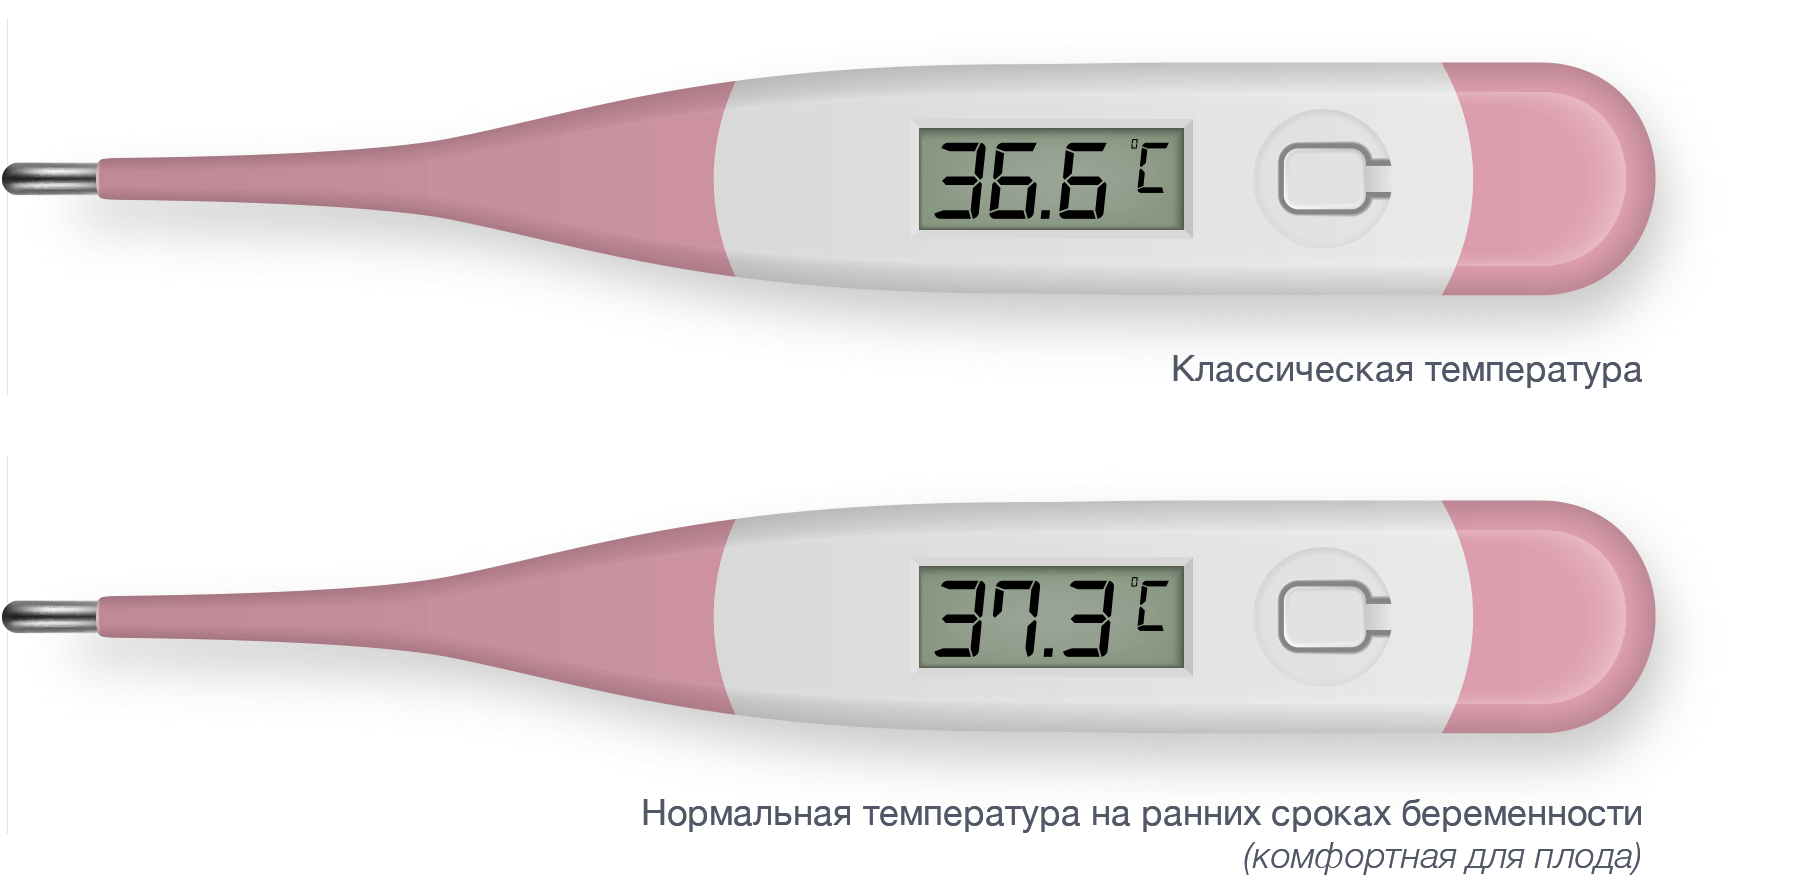 Температура 37 при беременности